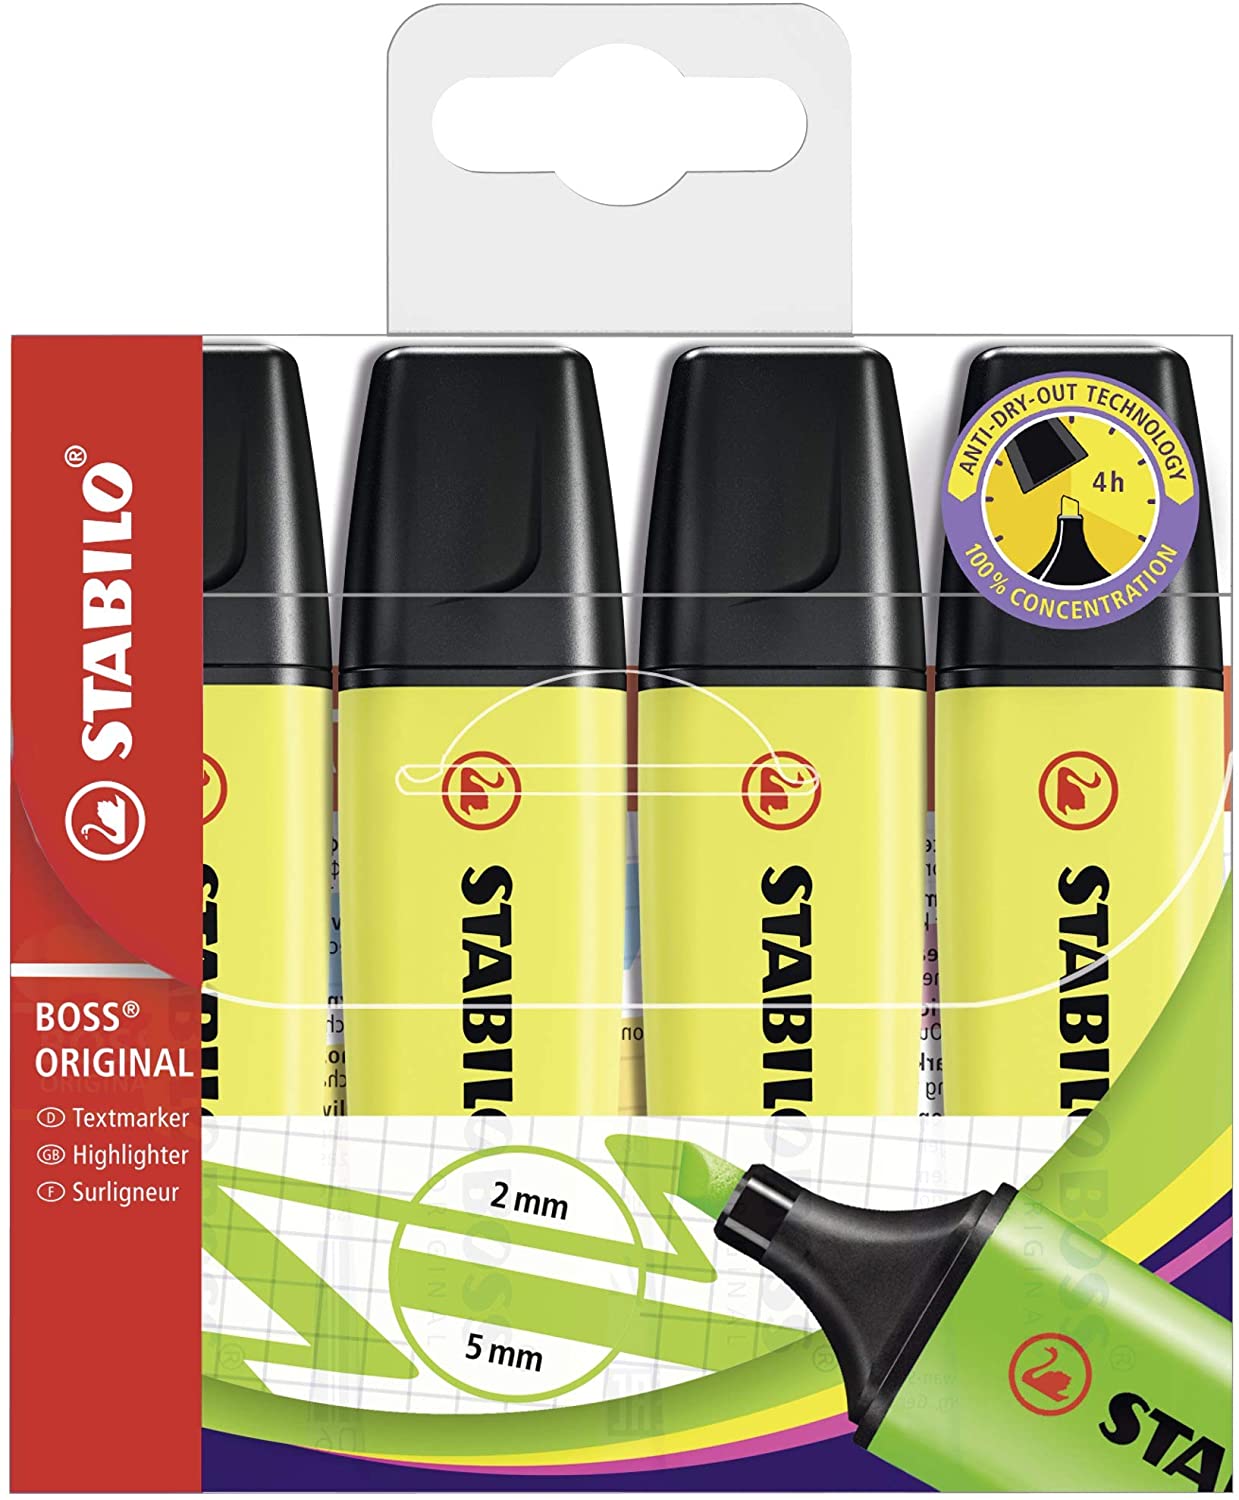 Stabilo Boss 70 Pack de 4 Marcadores Fluorescentes - Trazo entre 2 y 5mm - Recargable - Tinta con Base de Agua - Color Amarillo Fluorescente